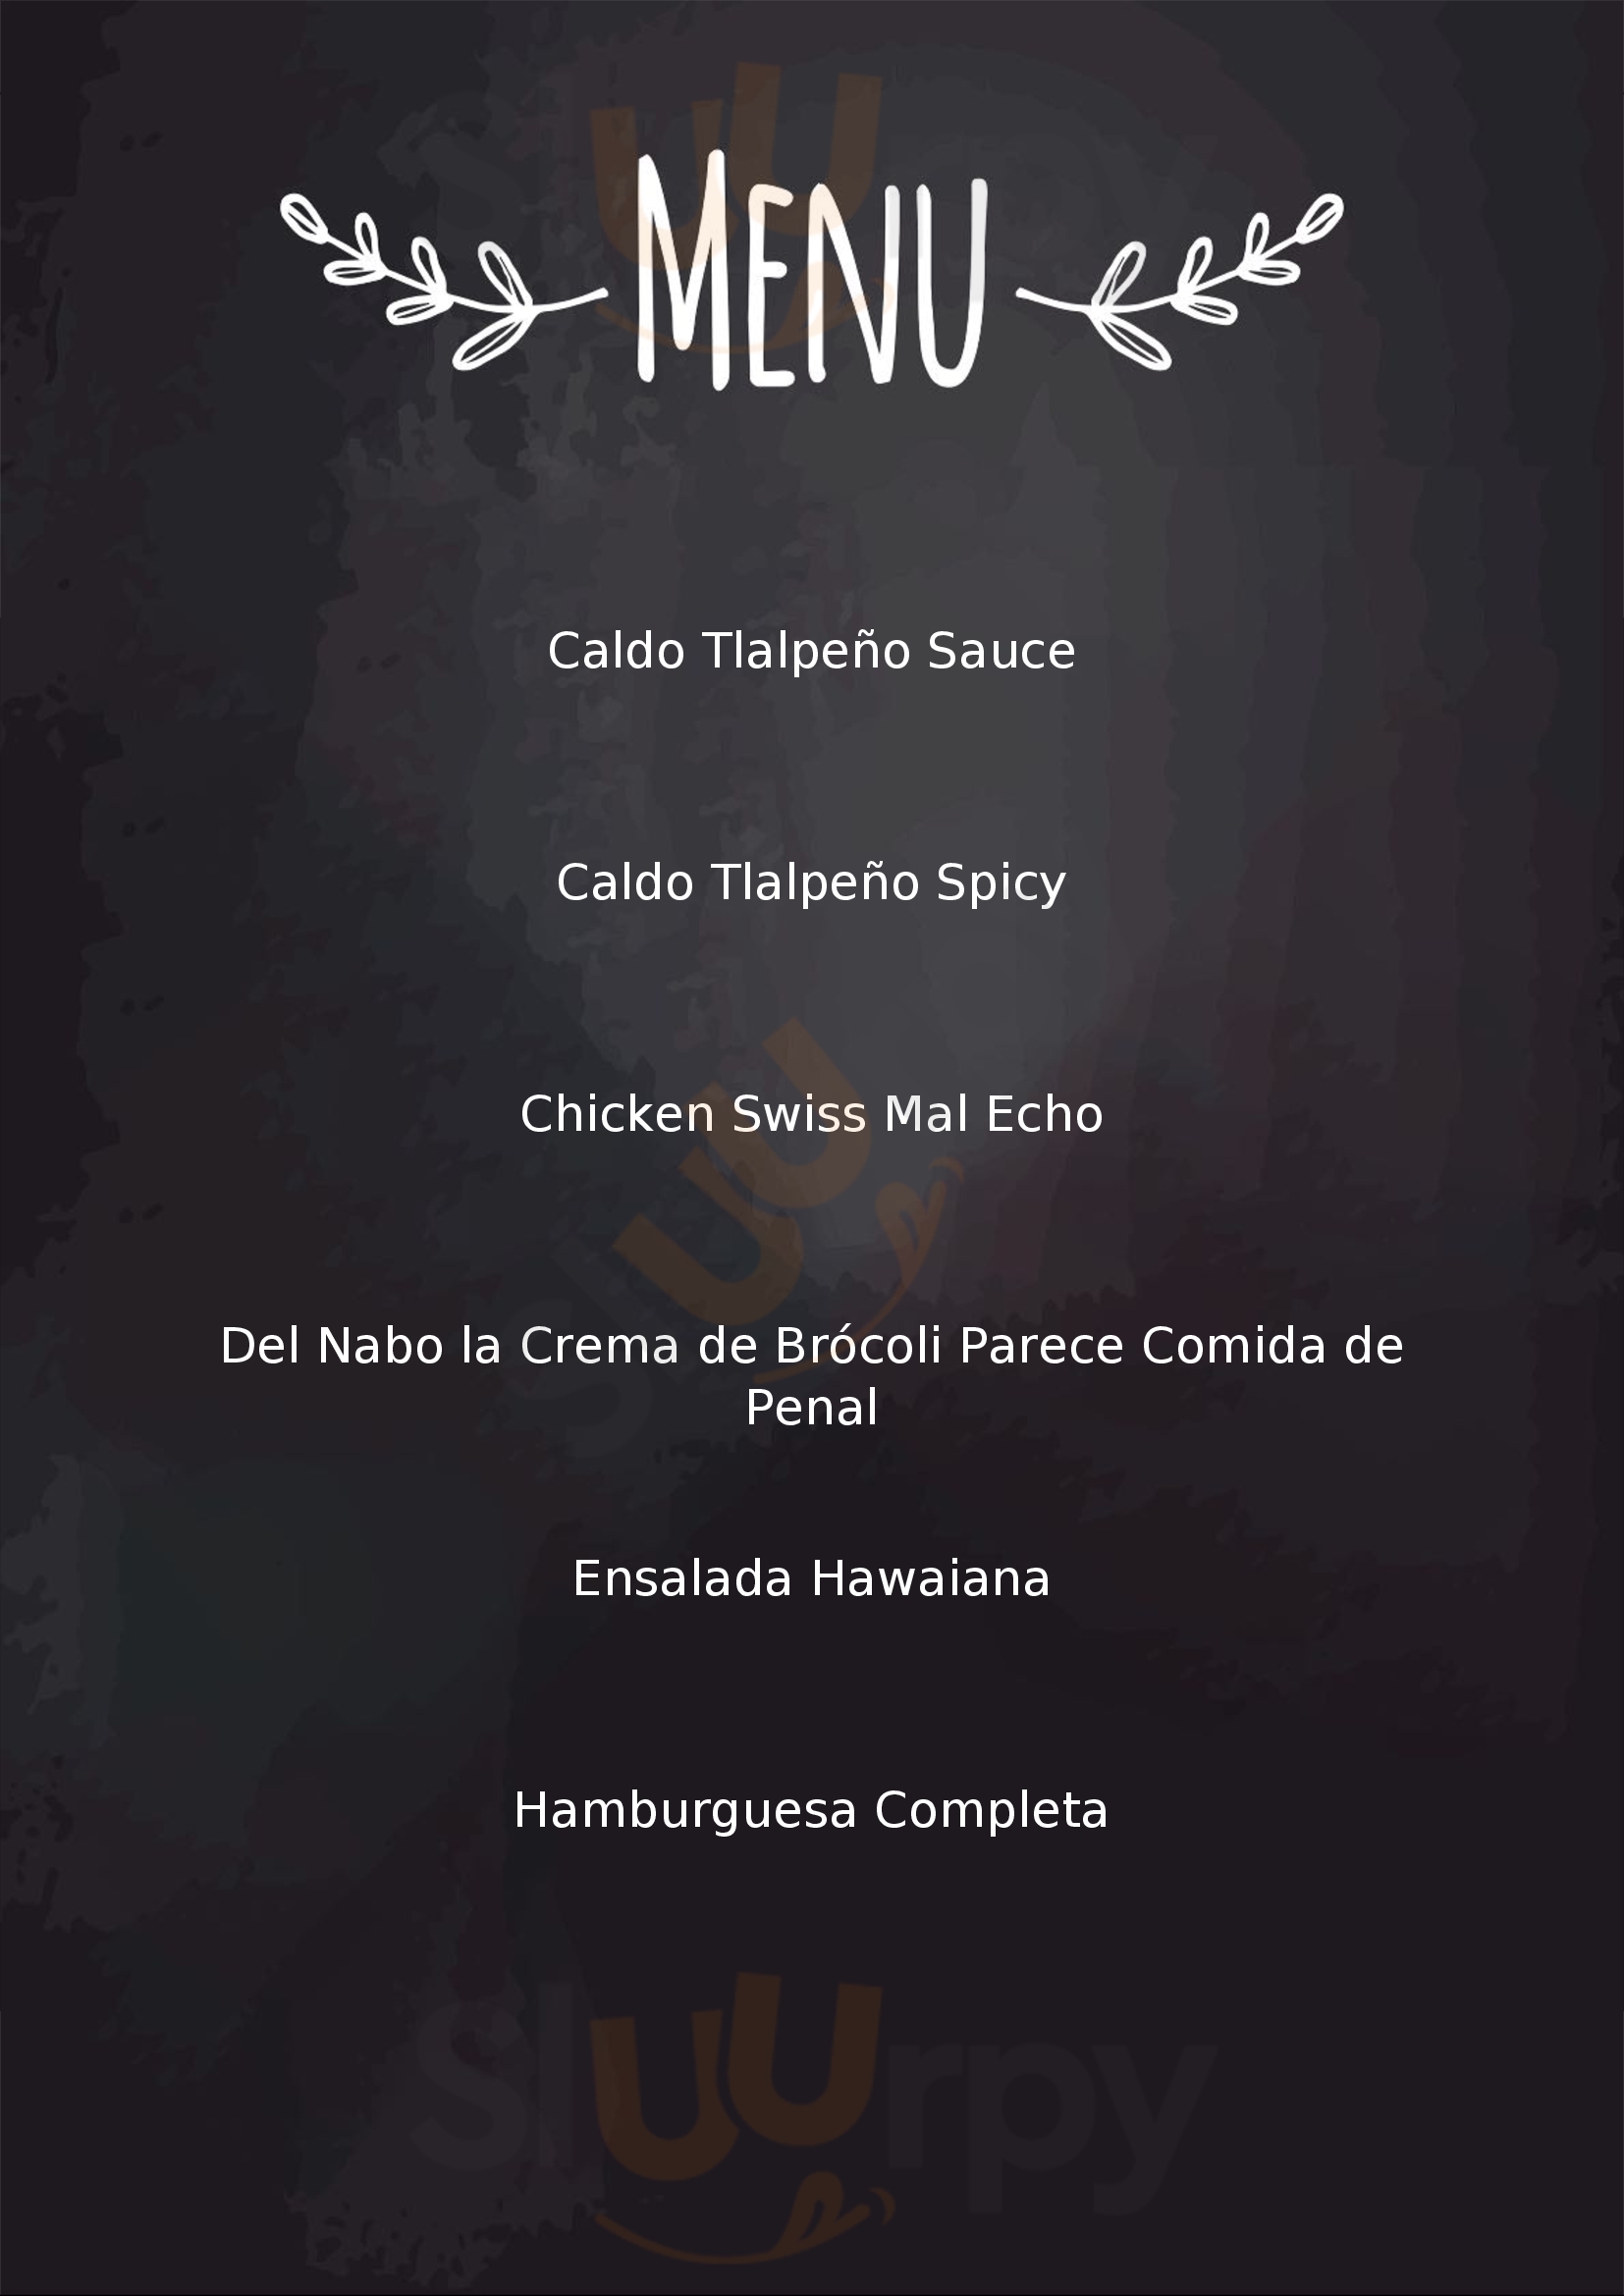 Super Salads Monterrey Menu - 1